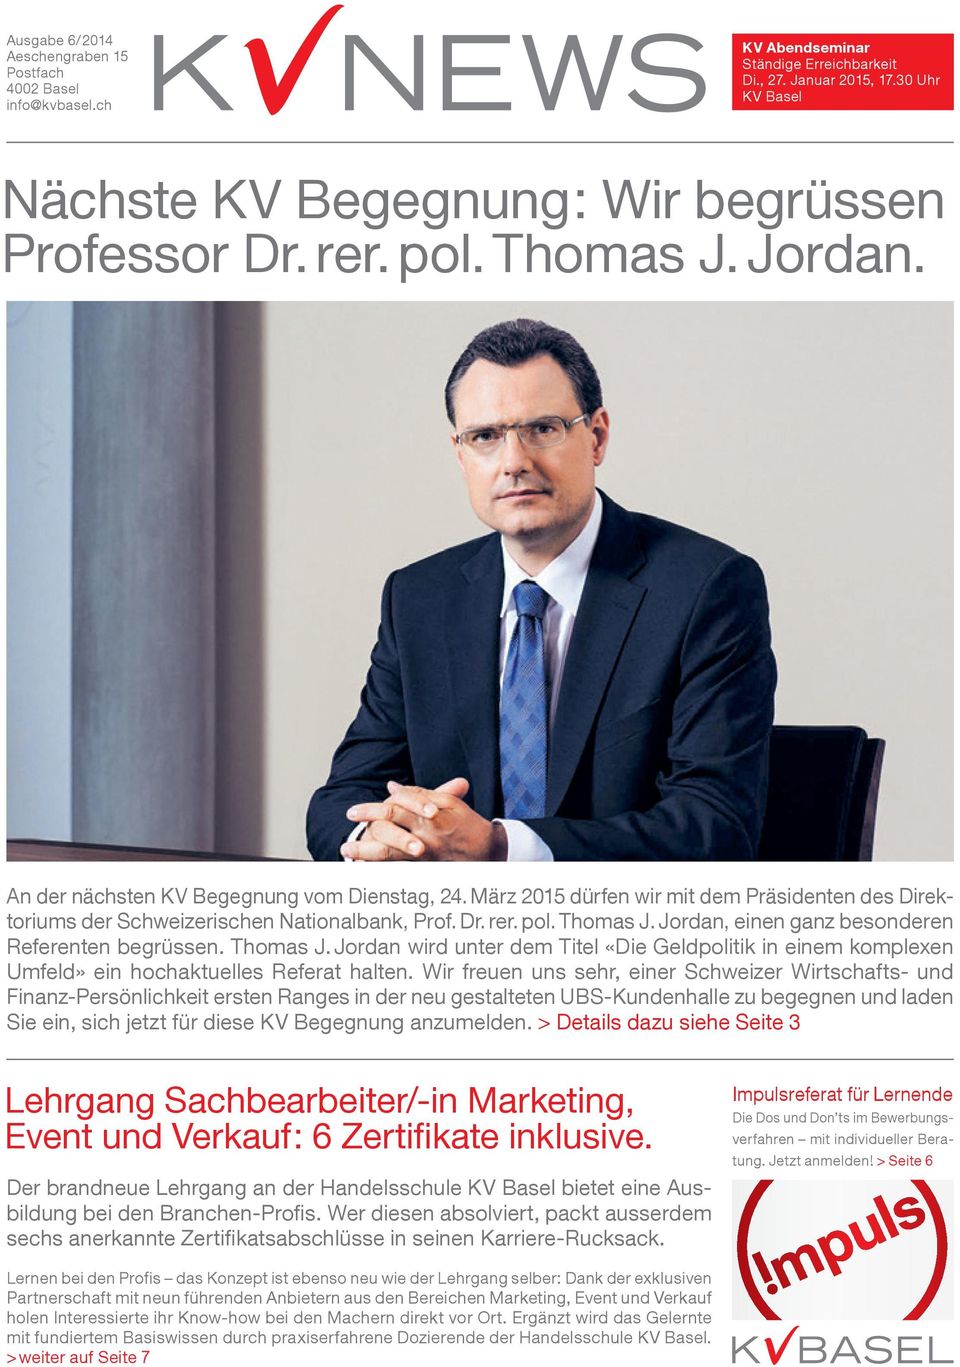 Thomas J. Jordan wird unter dem Titel «Die Geldpolitik in einem komplexen Umfeld» ein hochaktuelles Referat halten.